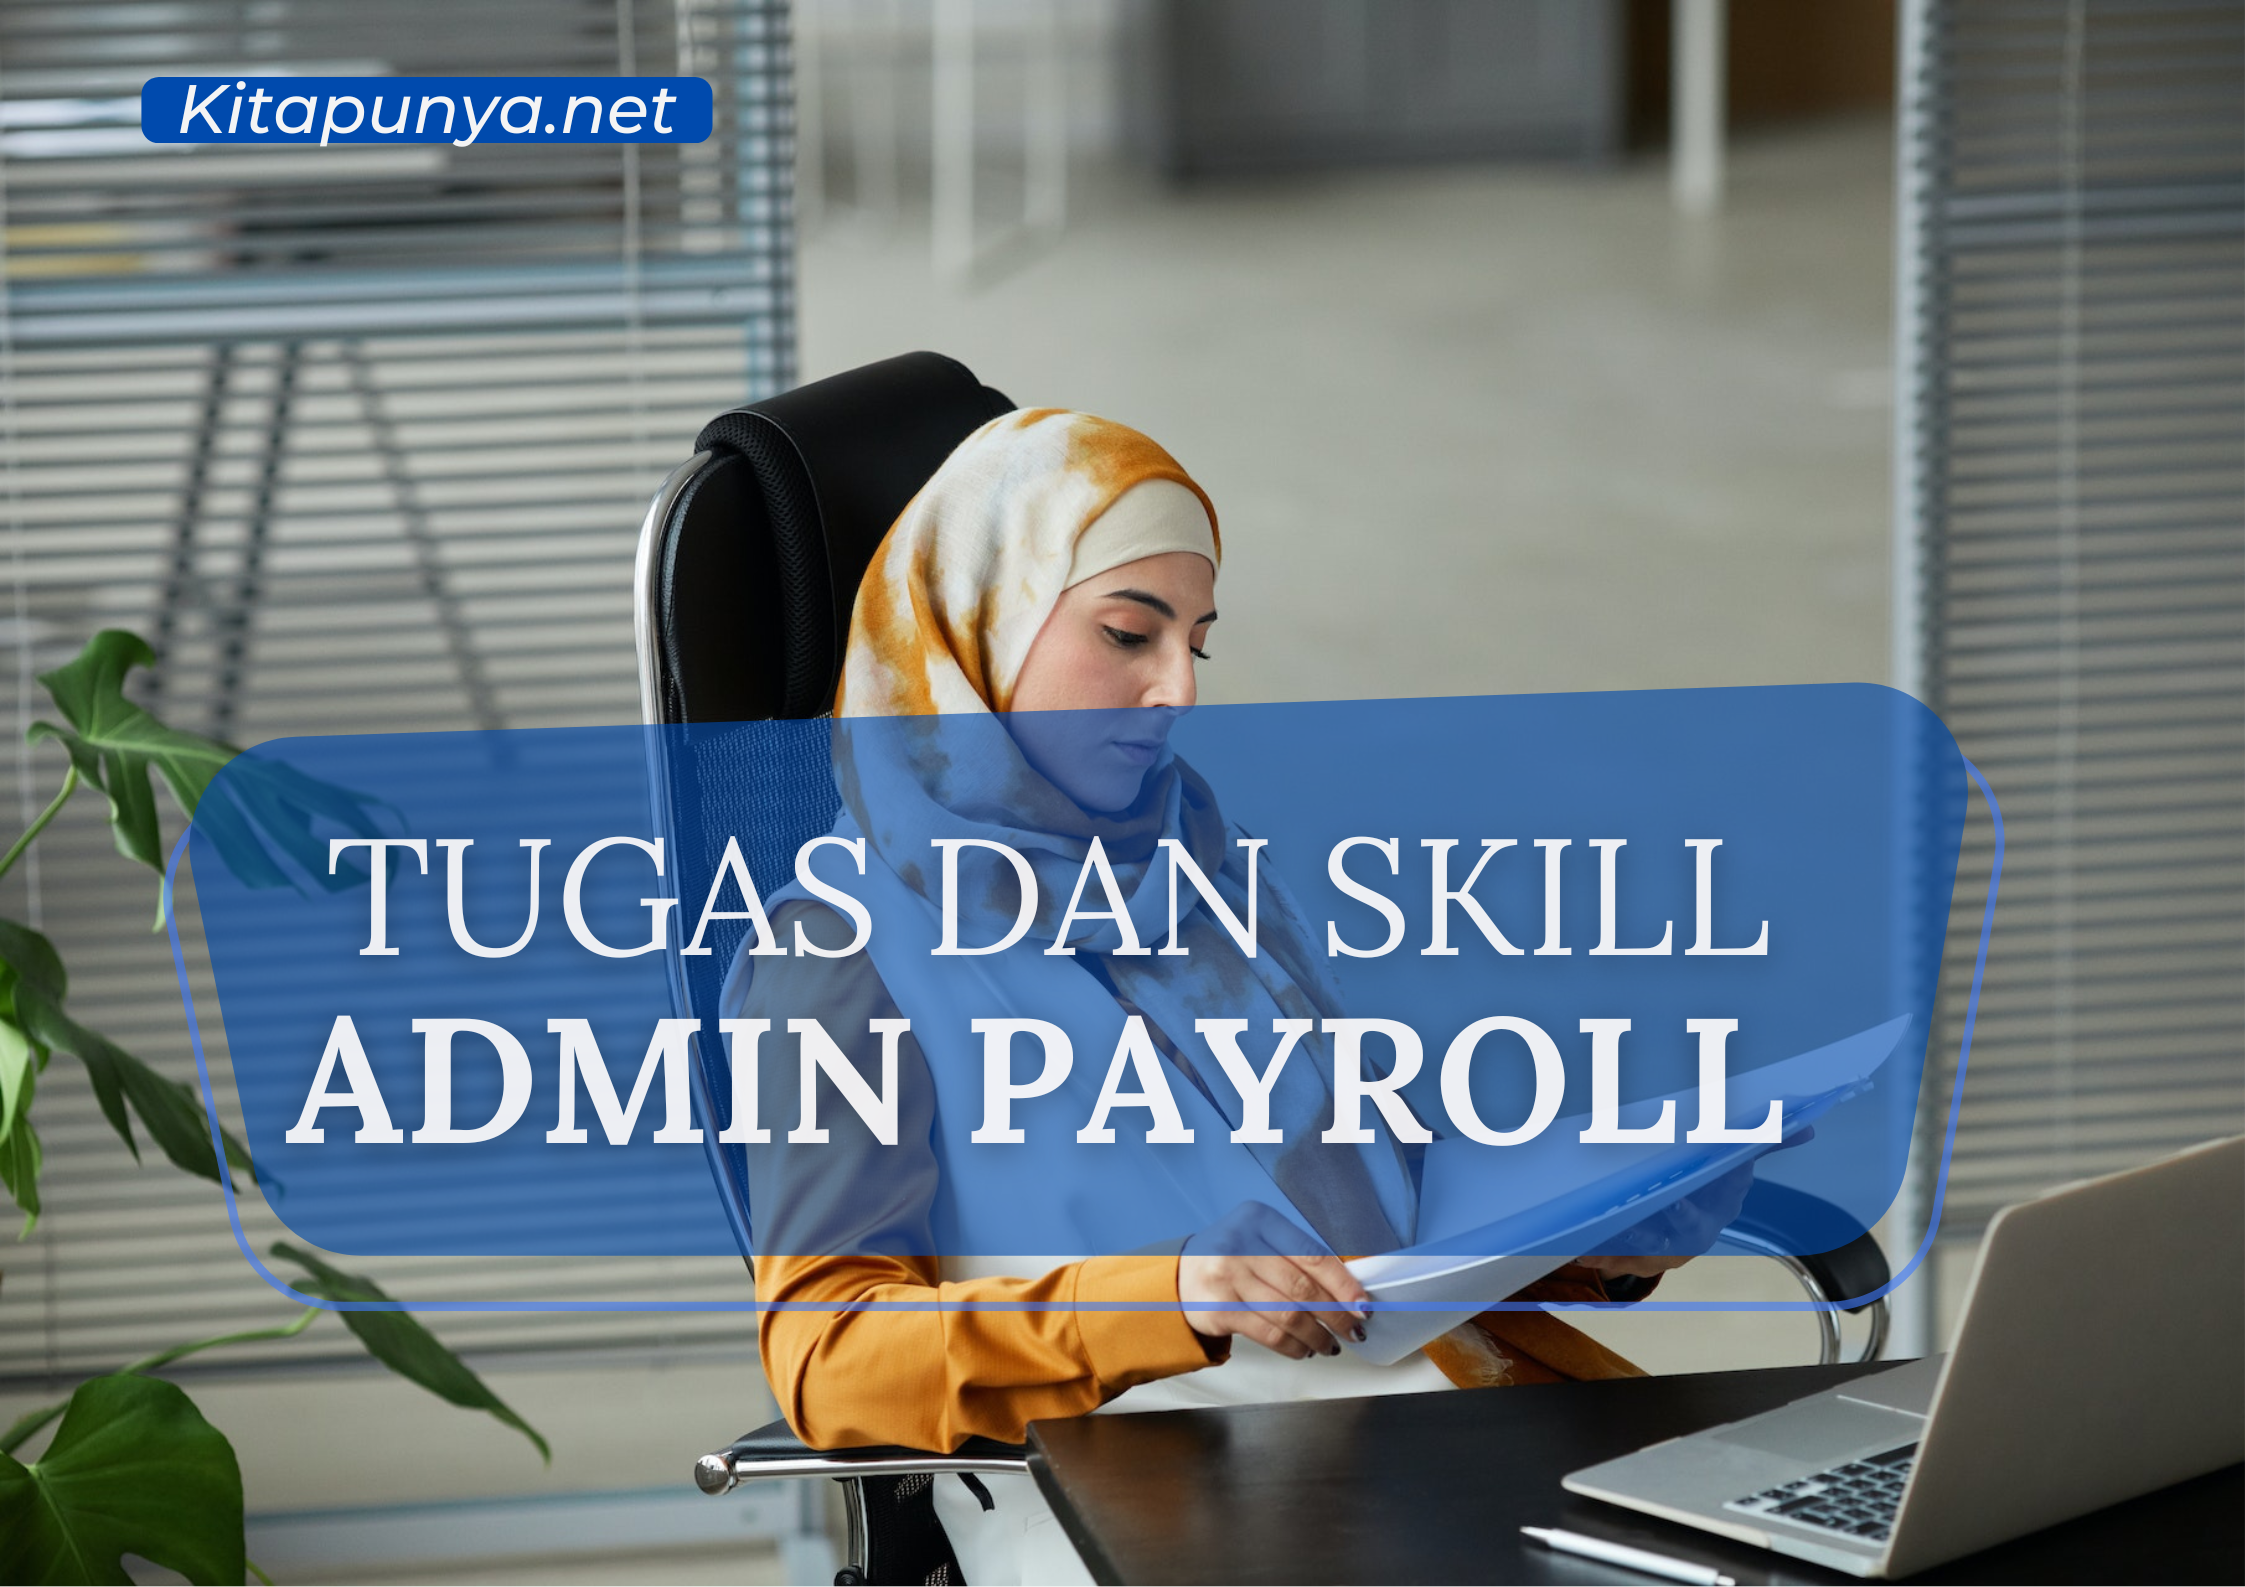 Tugas dan Skill Admin Payroll